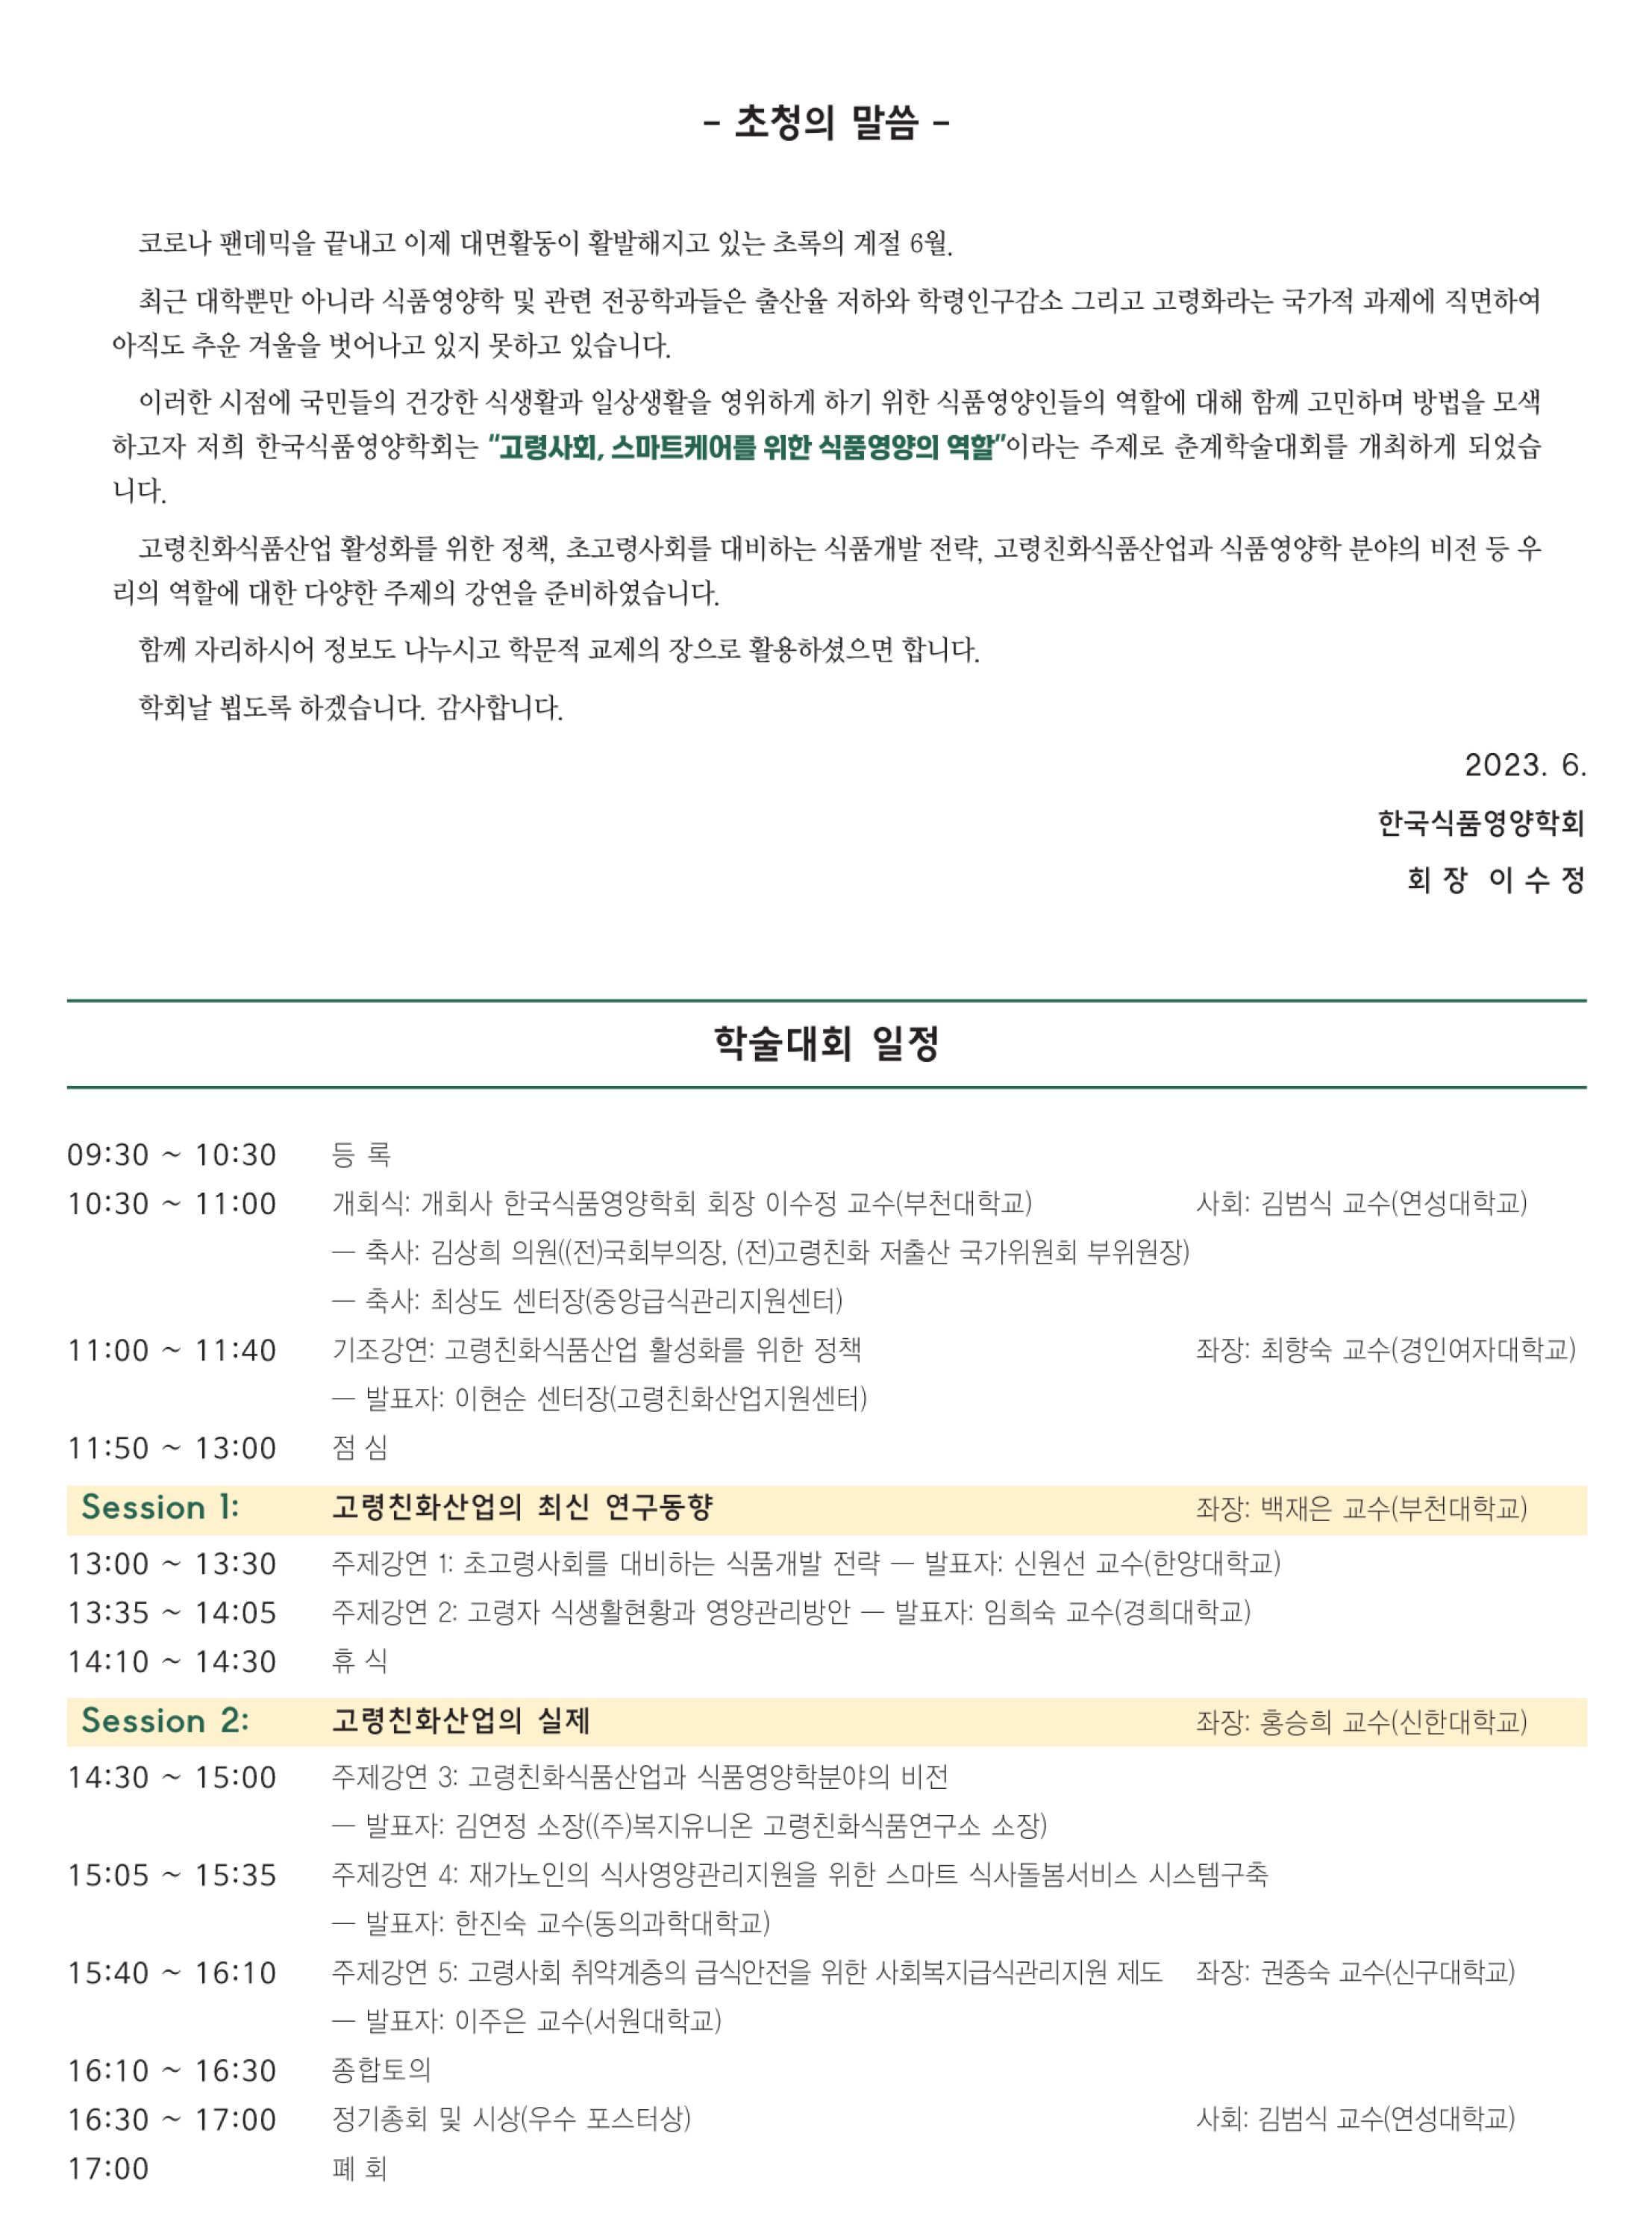 2.한국식품영양학회 초청장 2023 춘계 - 자세한 내용은 첨부파일에서 확인